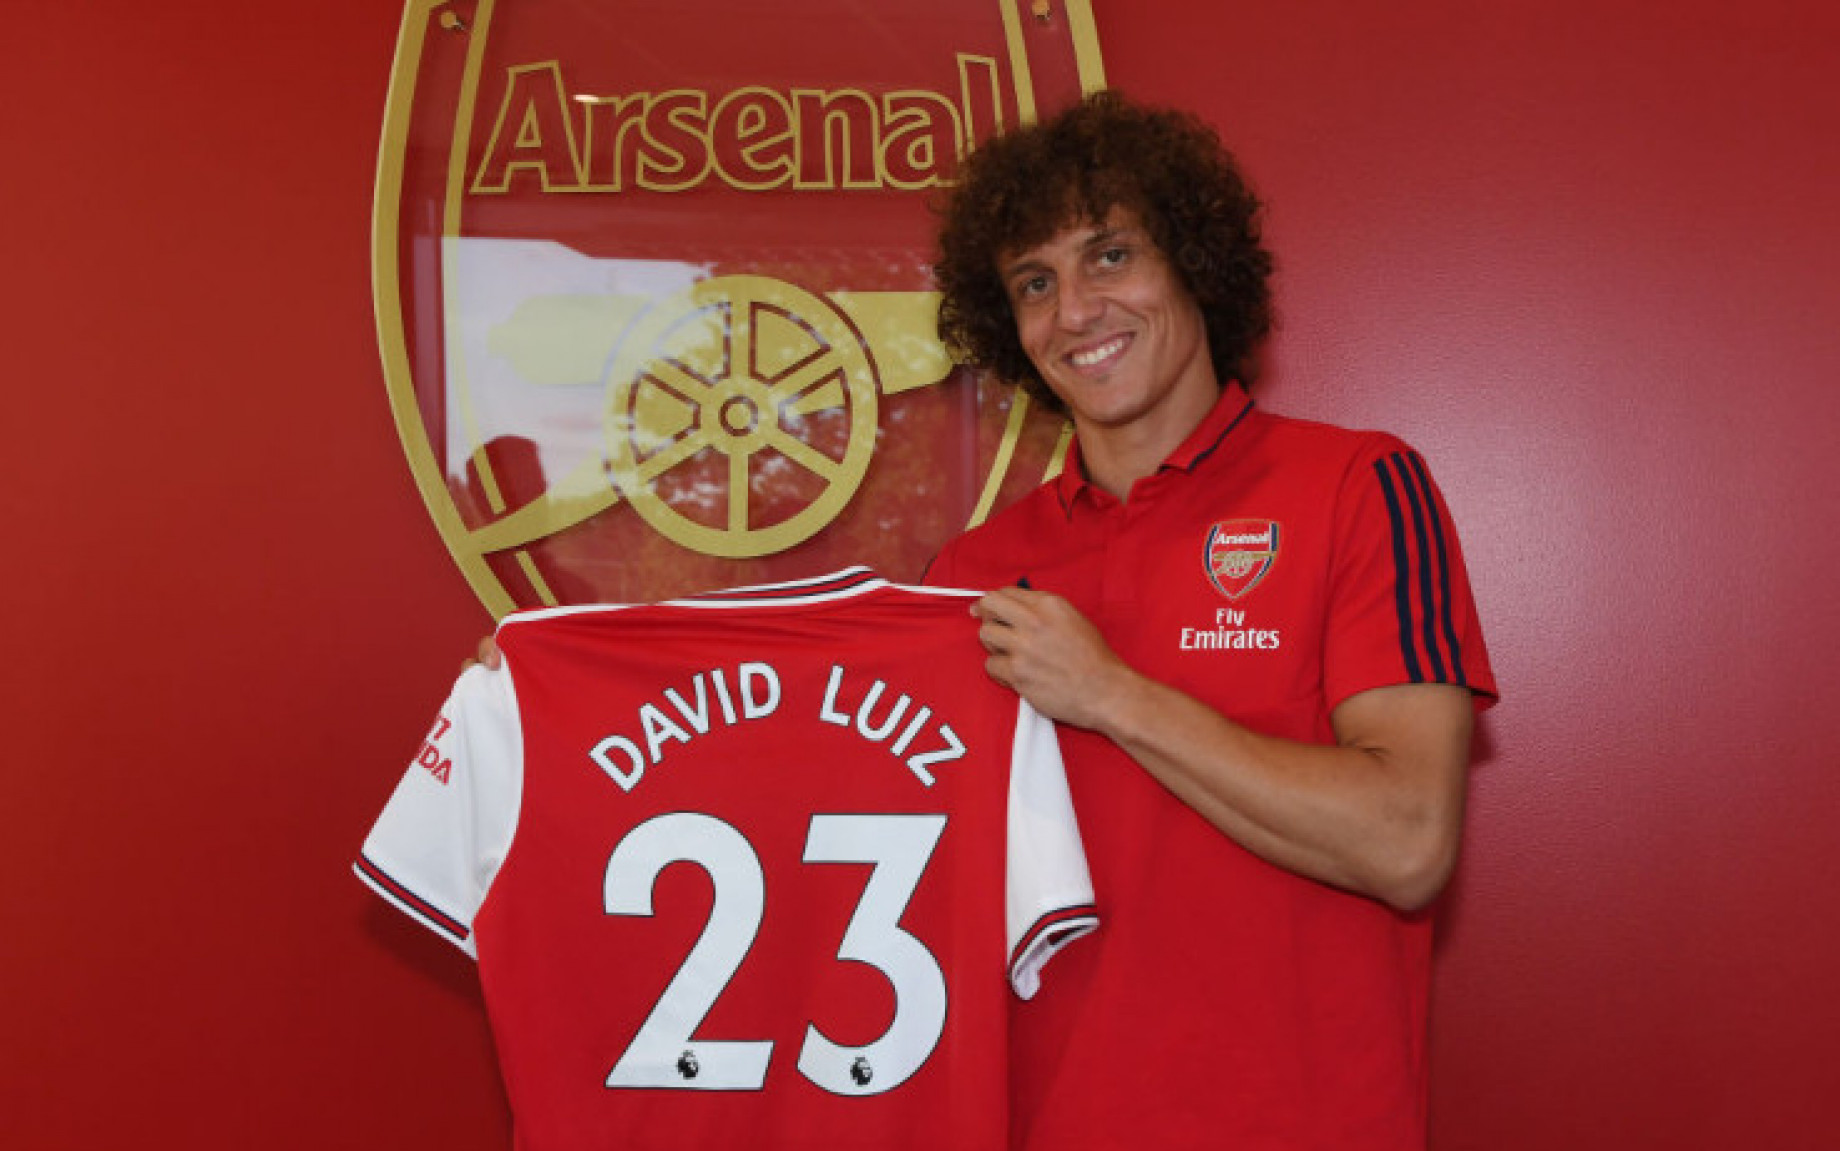 David_Luiz_Arsenal_GETTY.jpeg